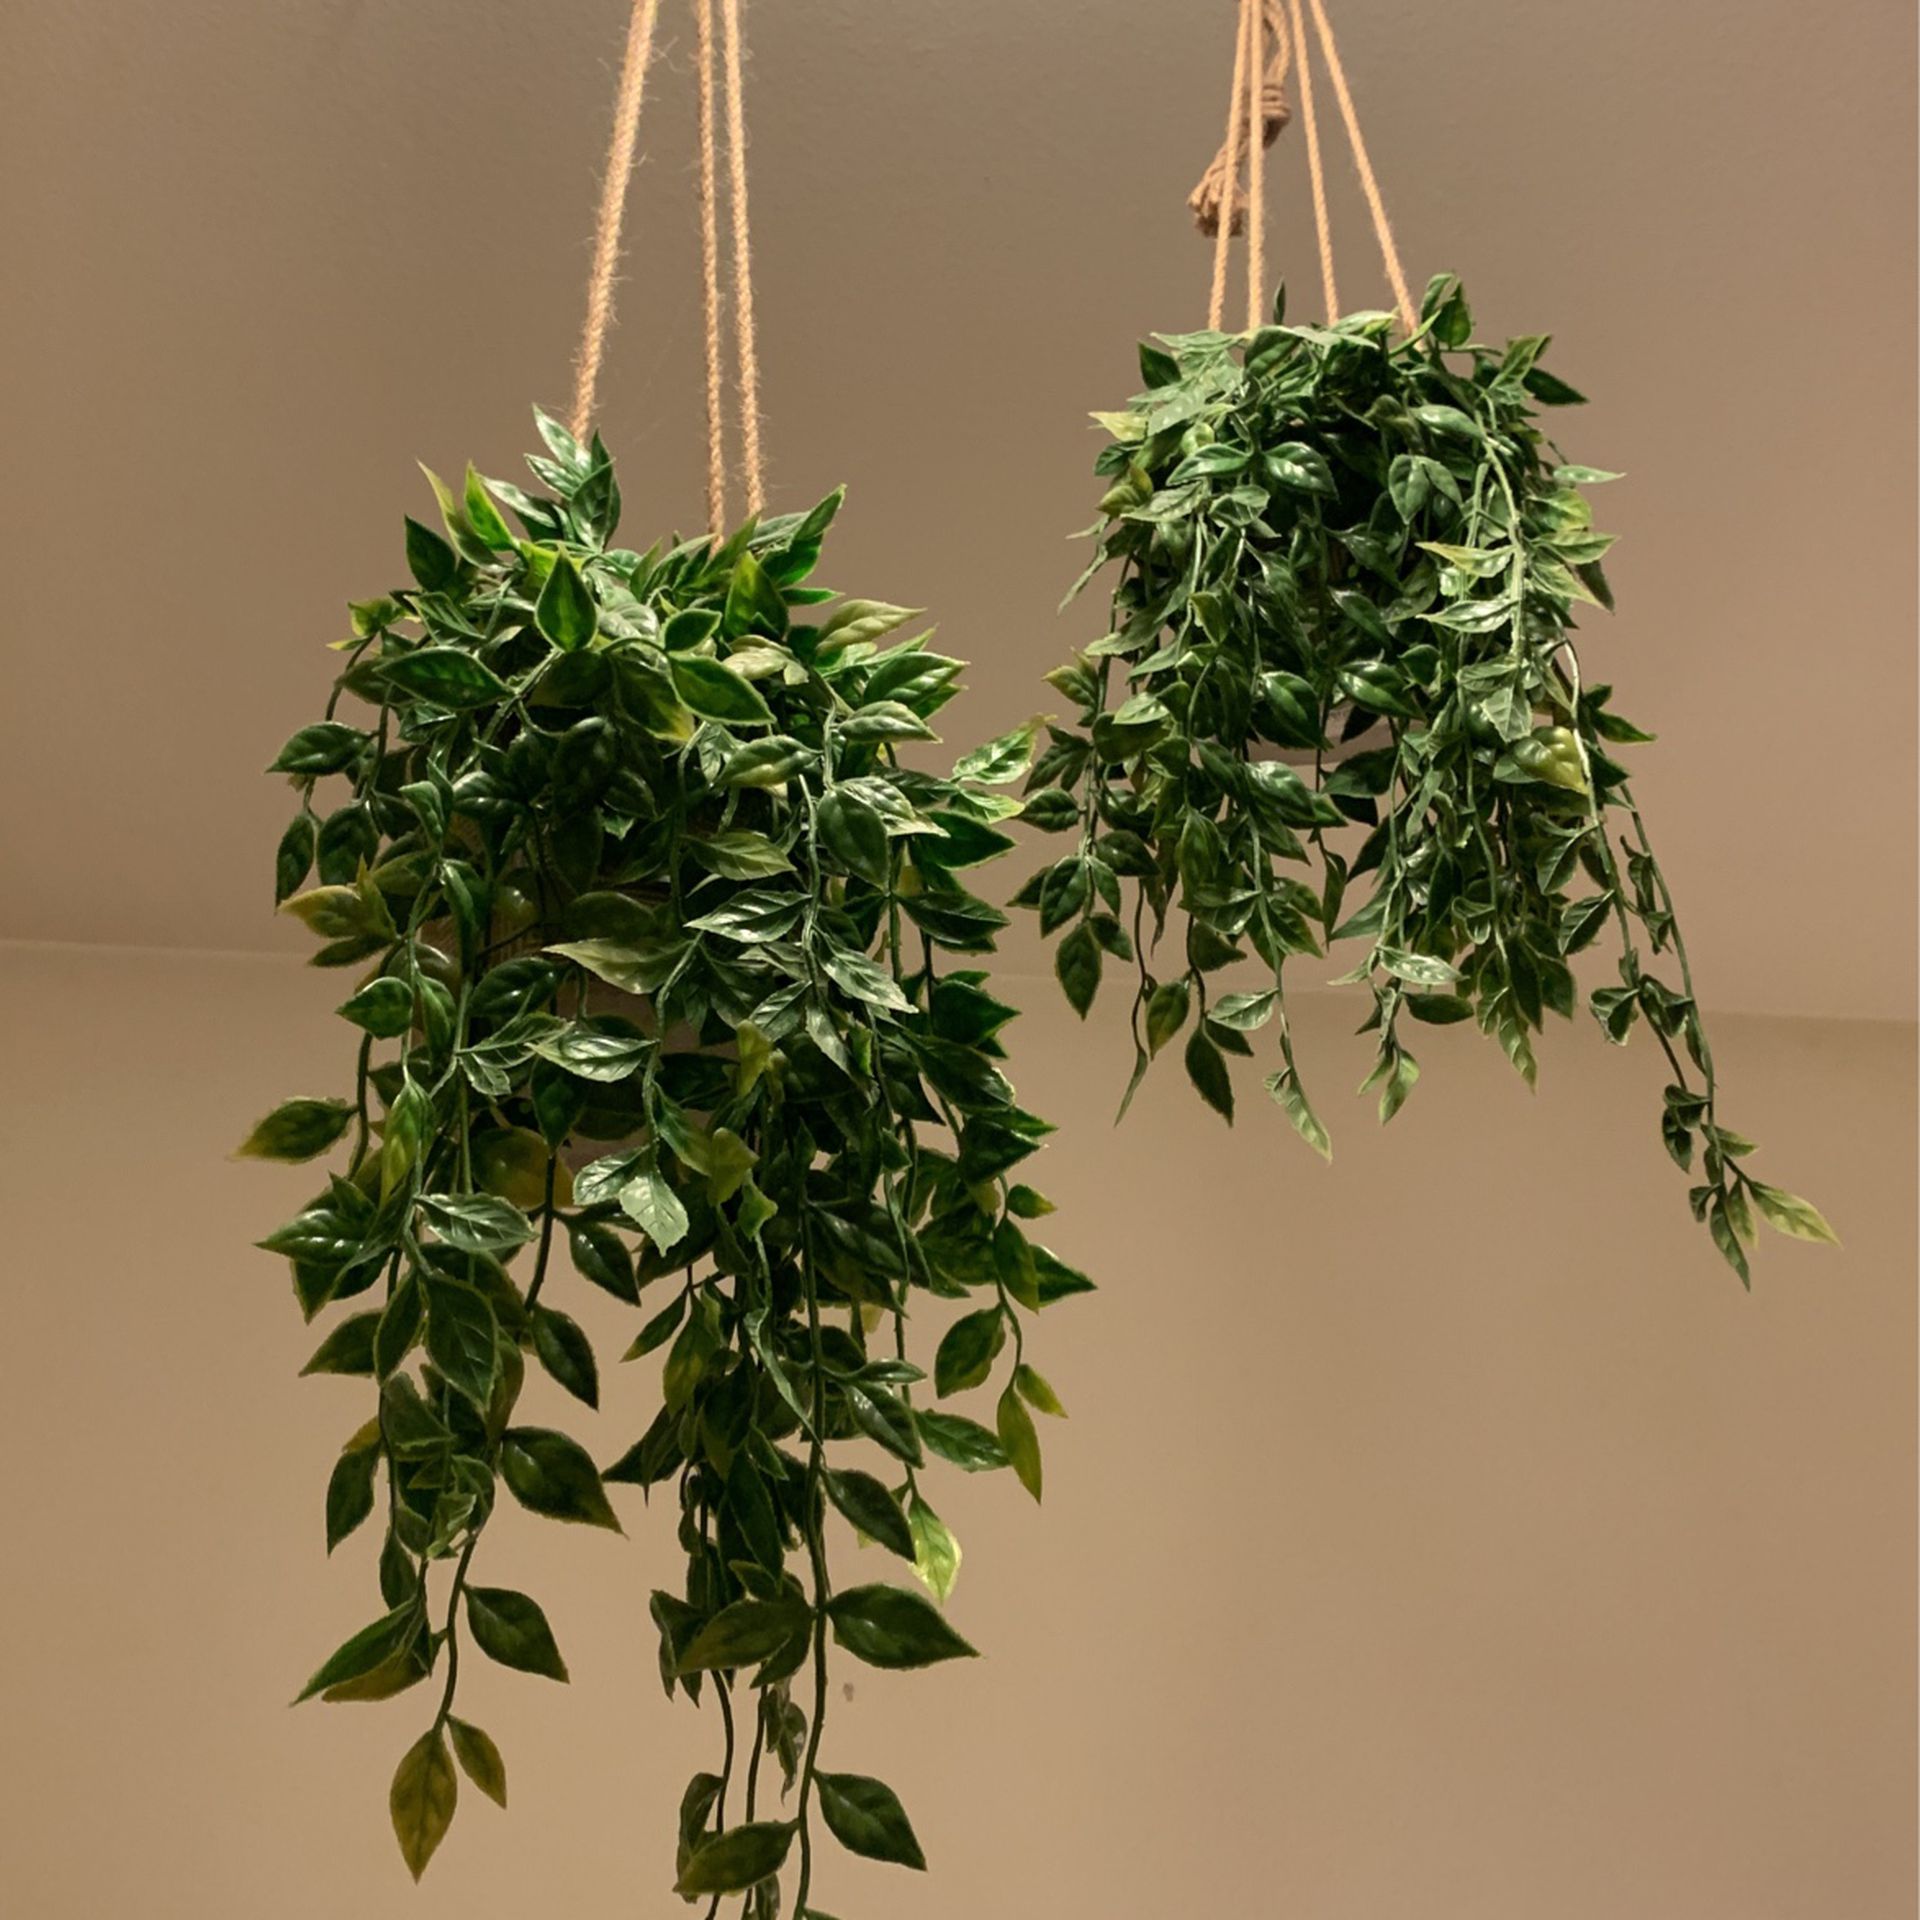 Fake hanging plants!